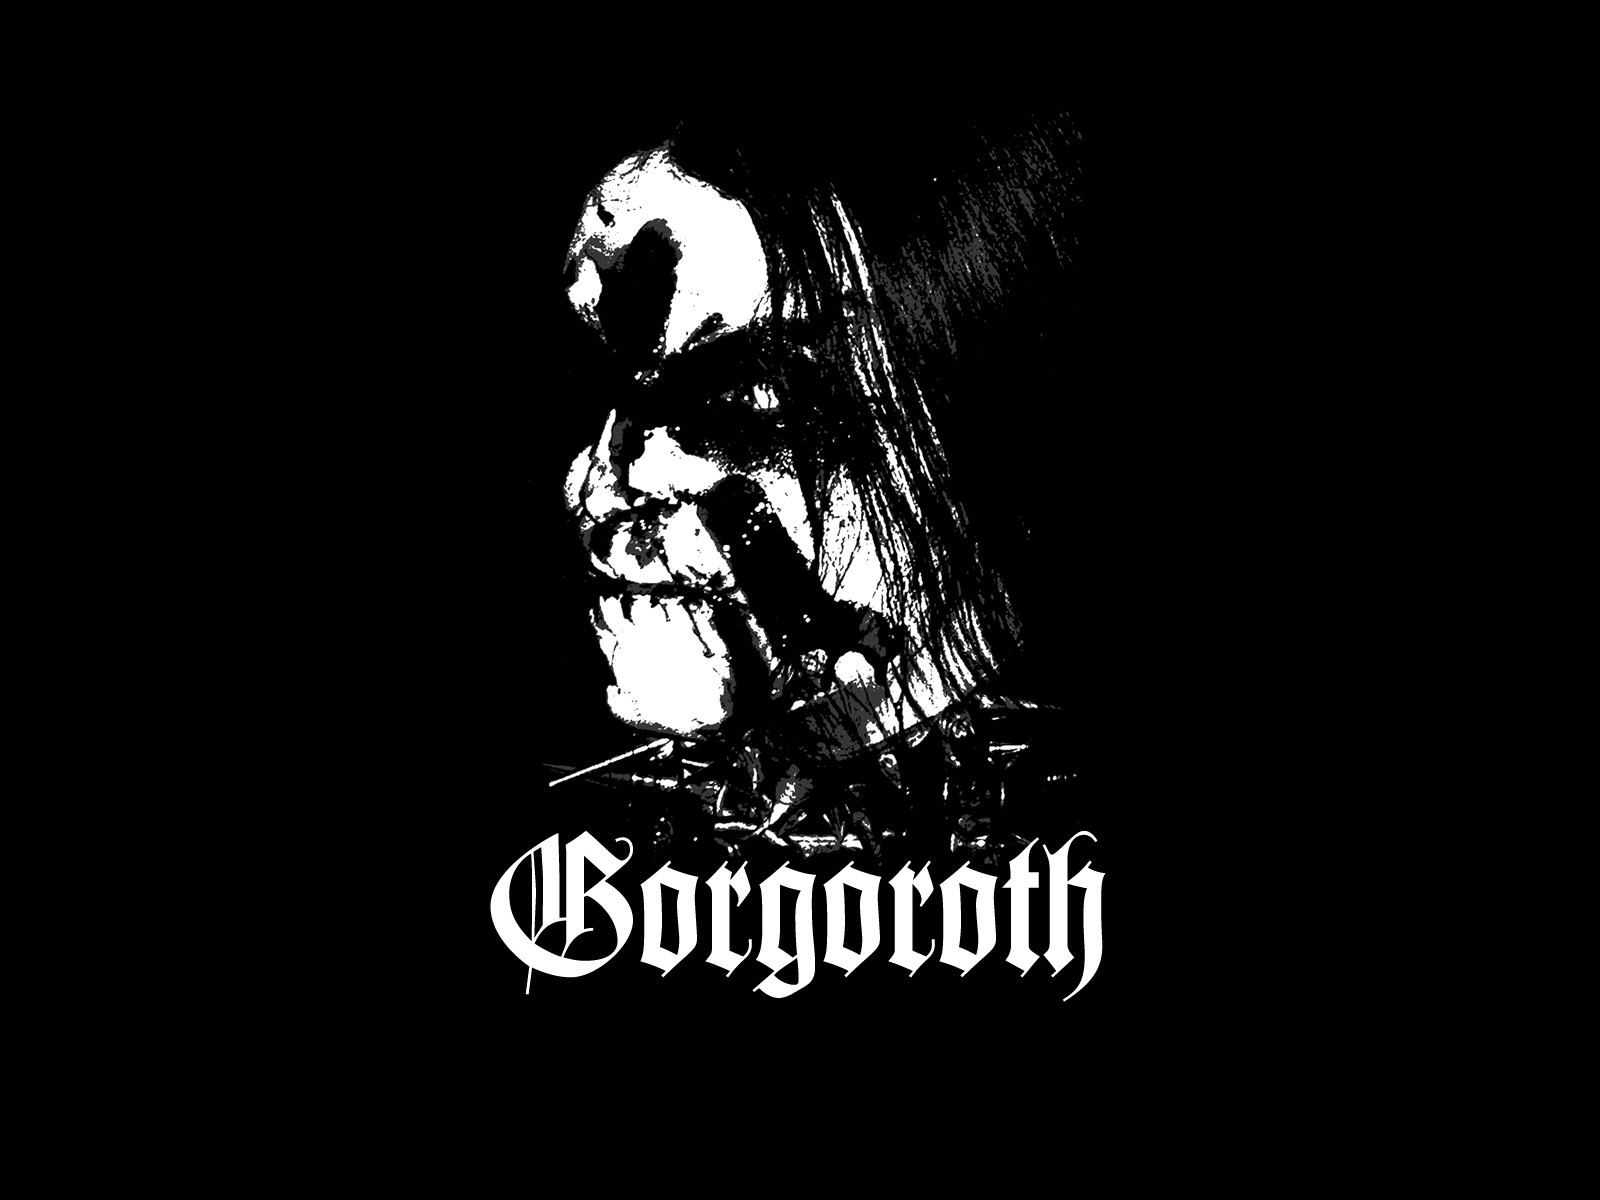 Black Metal Gorgoroth Typography Black Background Music Band Logo Extreme Metal Metal Music 1600x1200